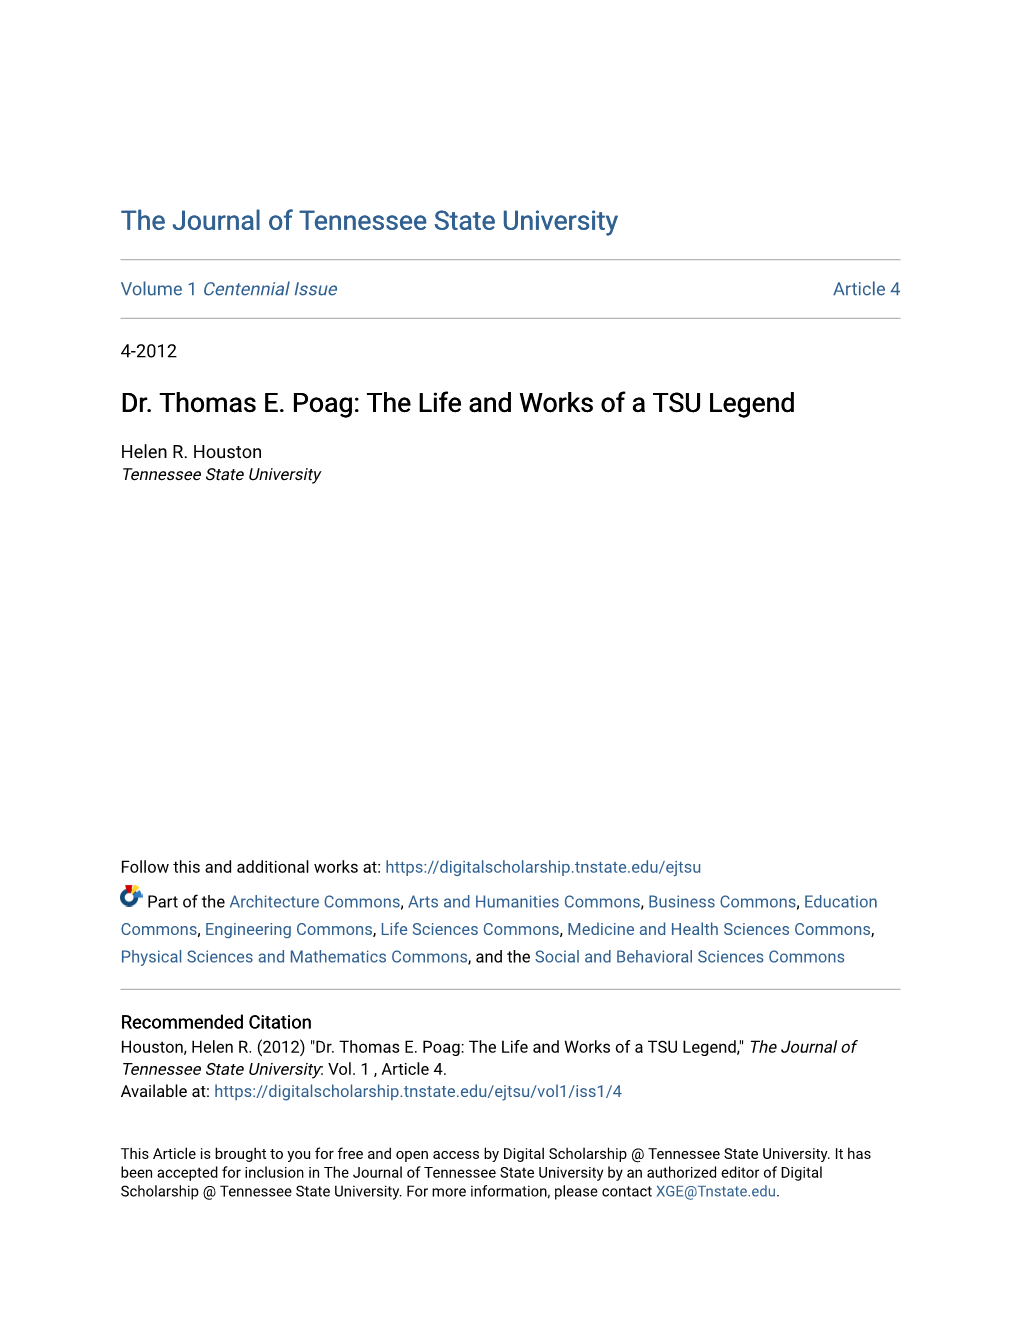 Dr. Thomas E. Poag: the Life and Works of a TSU Legend